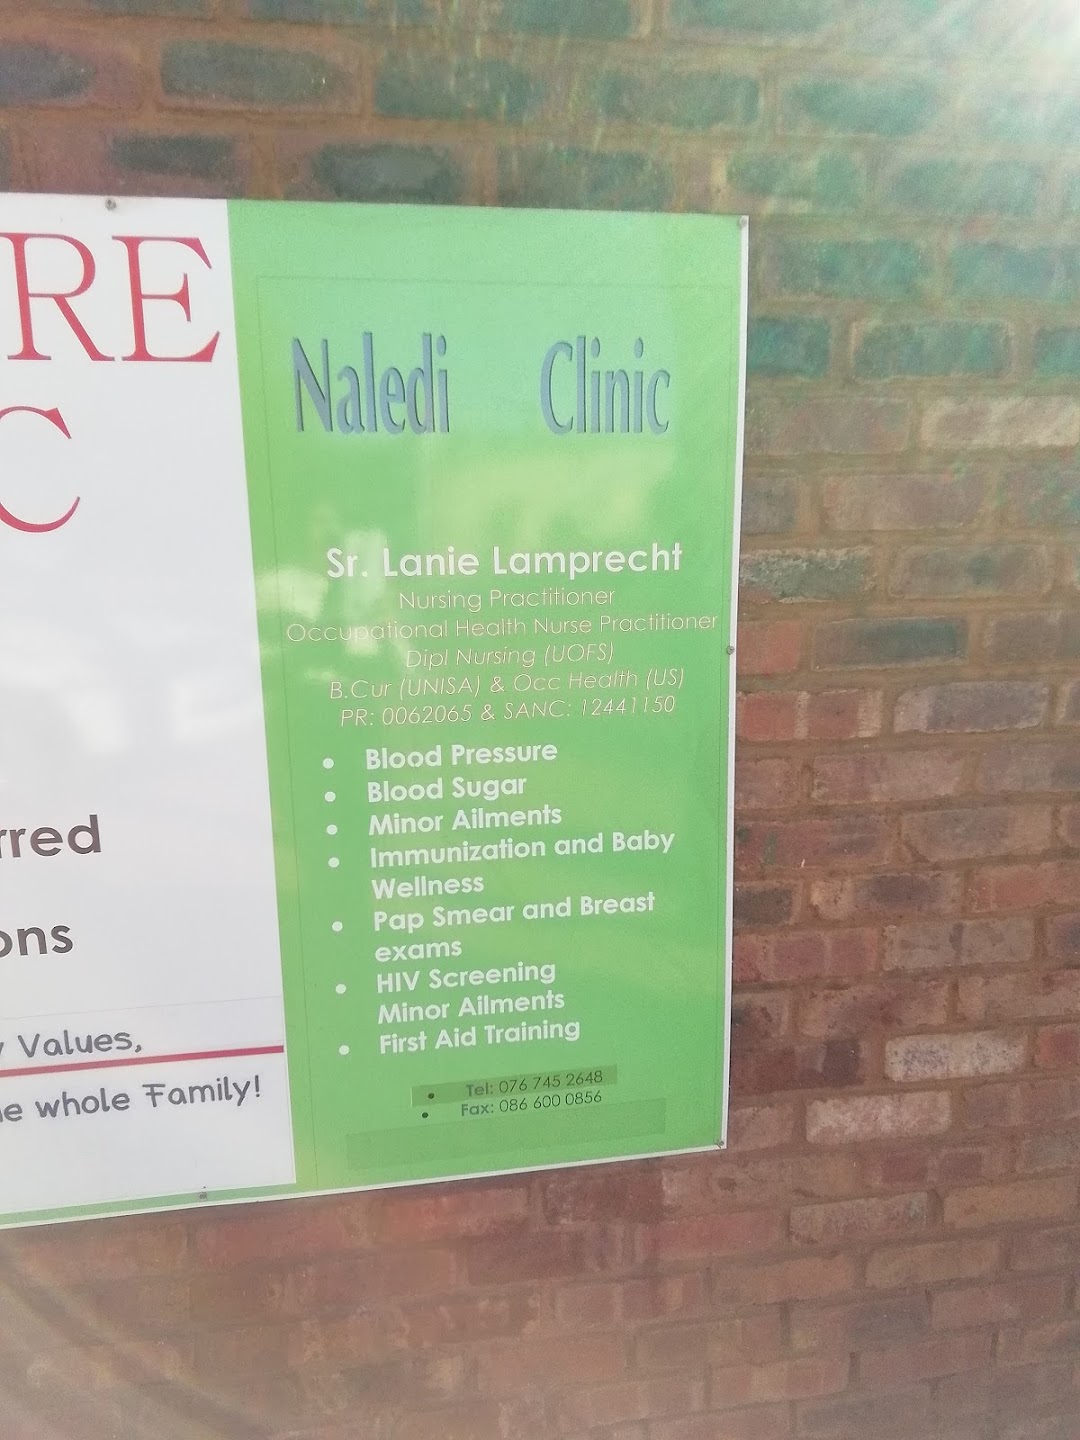 Naledi Family Care clinic